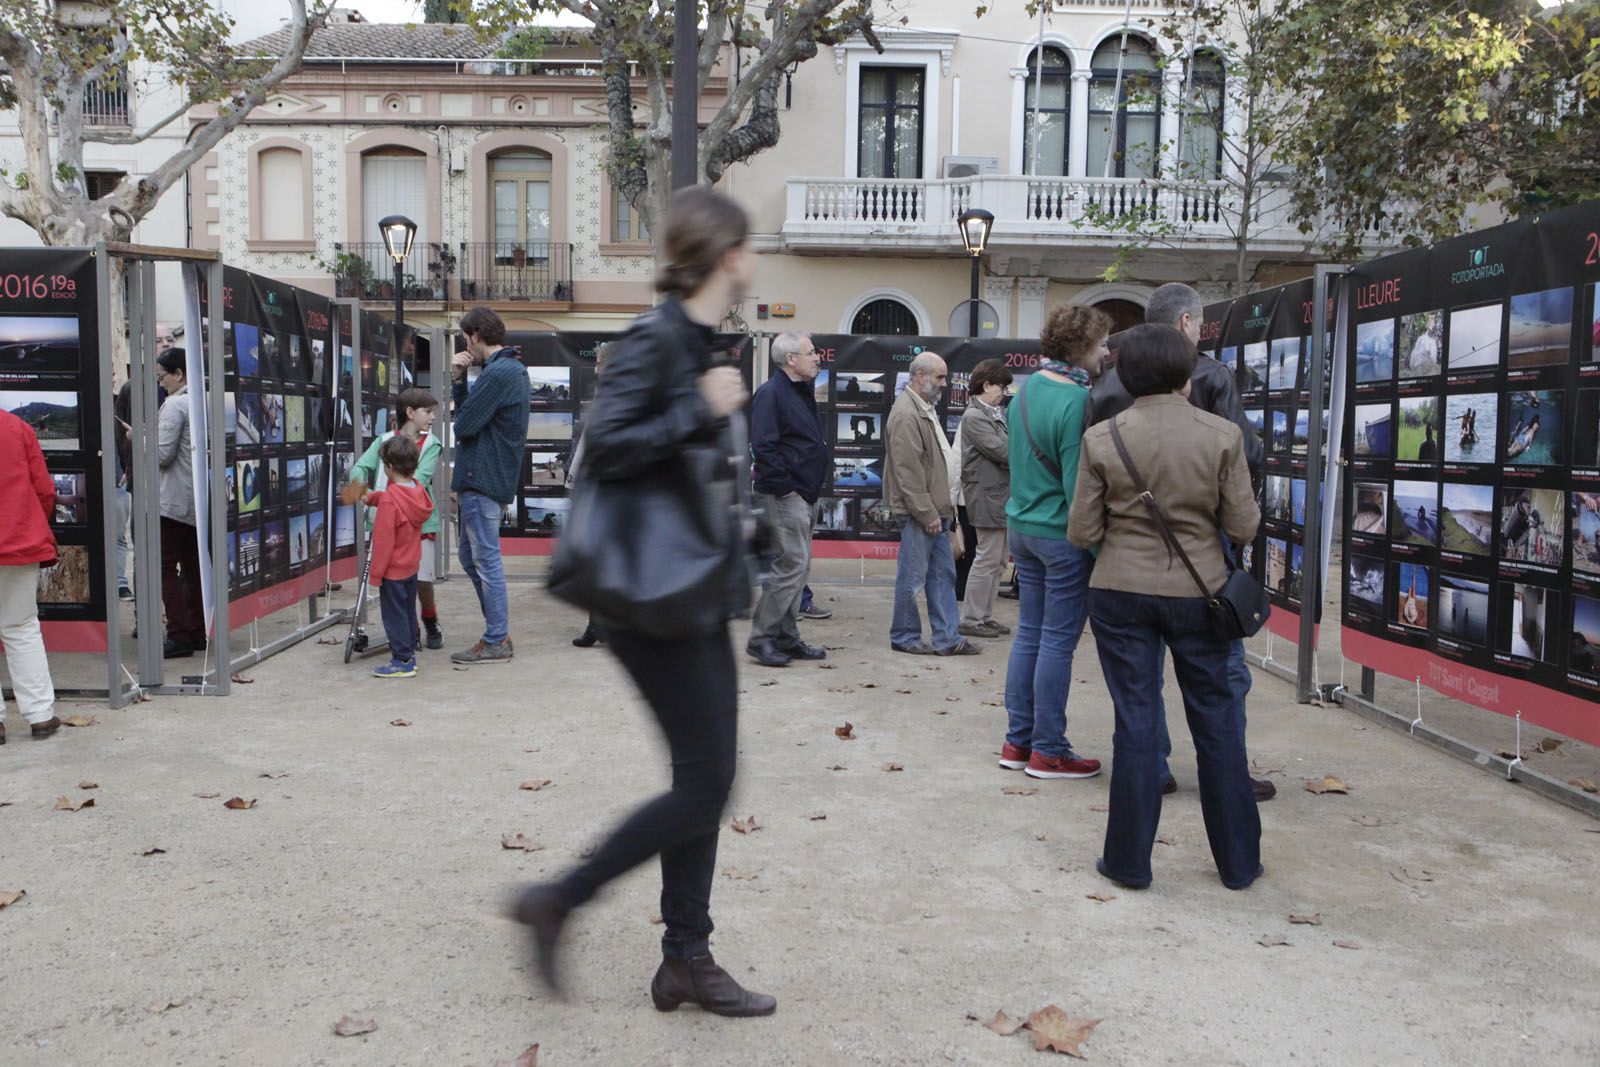 L'exposició es pot veure fins al 27 de novembre a la plaça de Barcelona FOTO: Artur Ribera